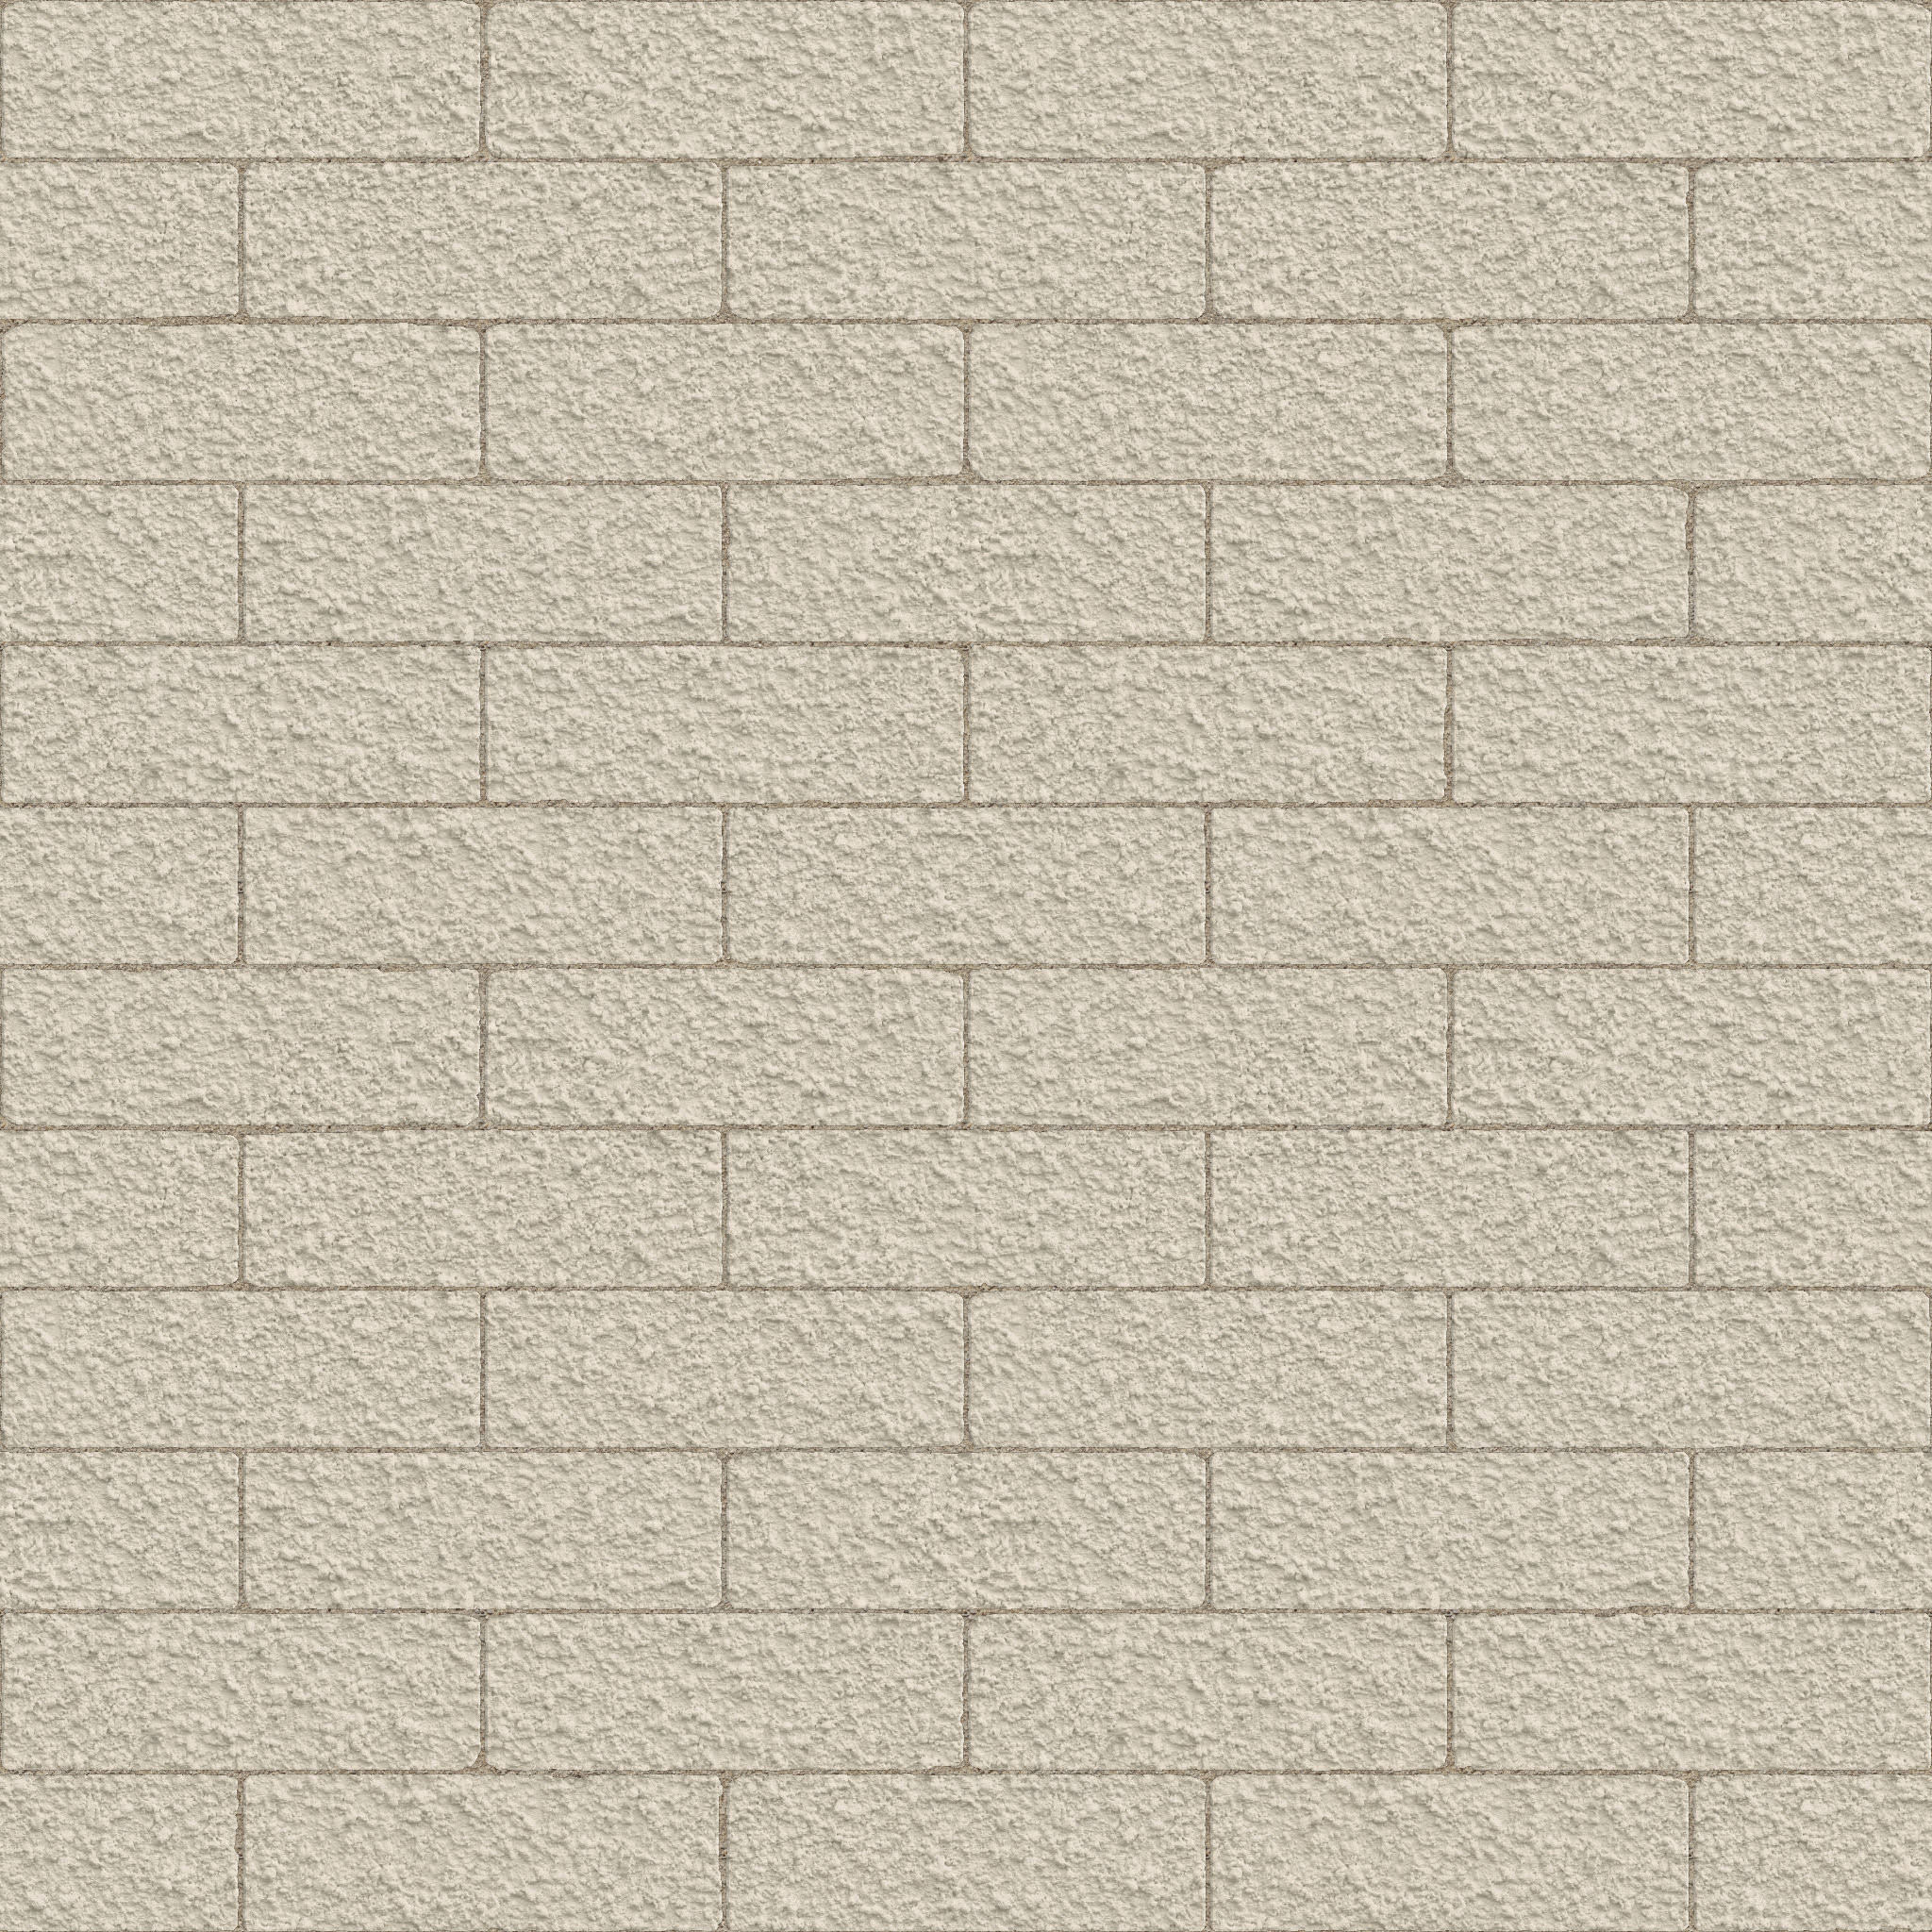 15+ Free White Wall Textures | Free & Premium Creatives